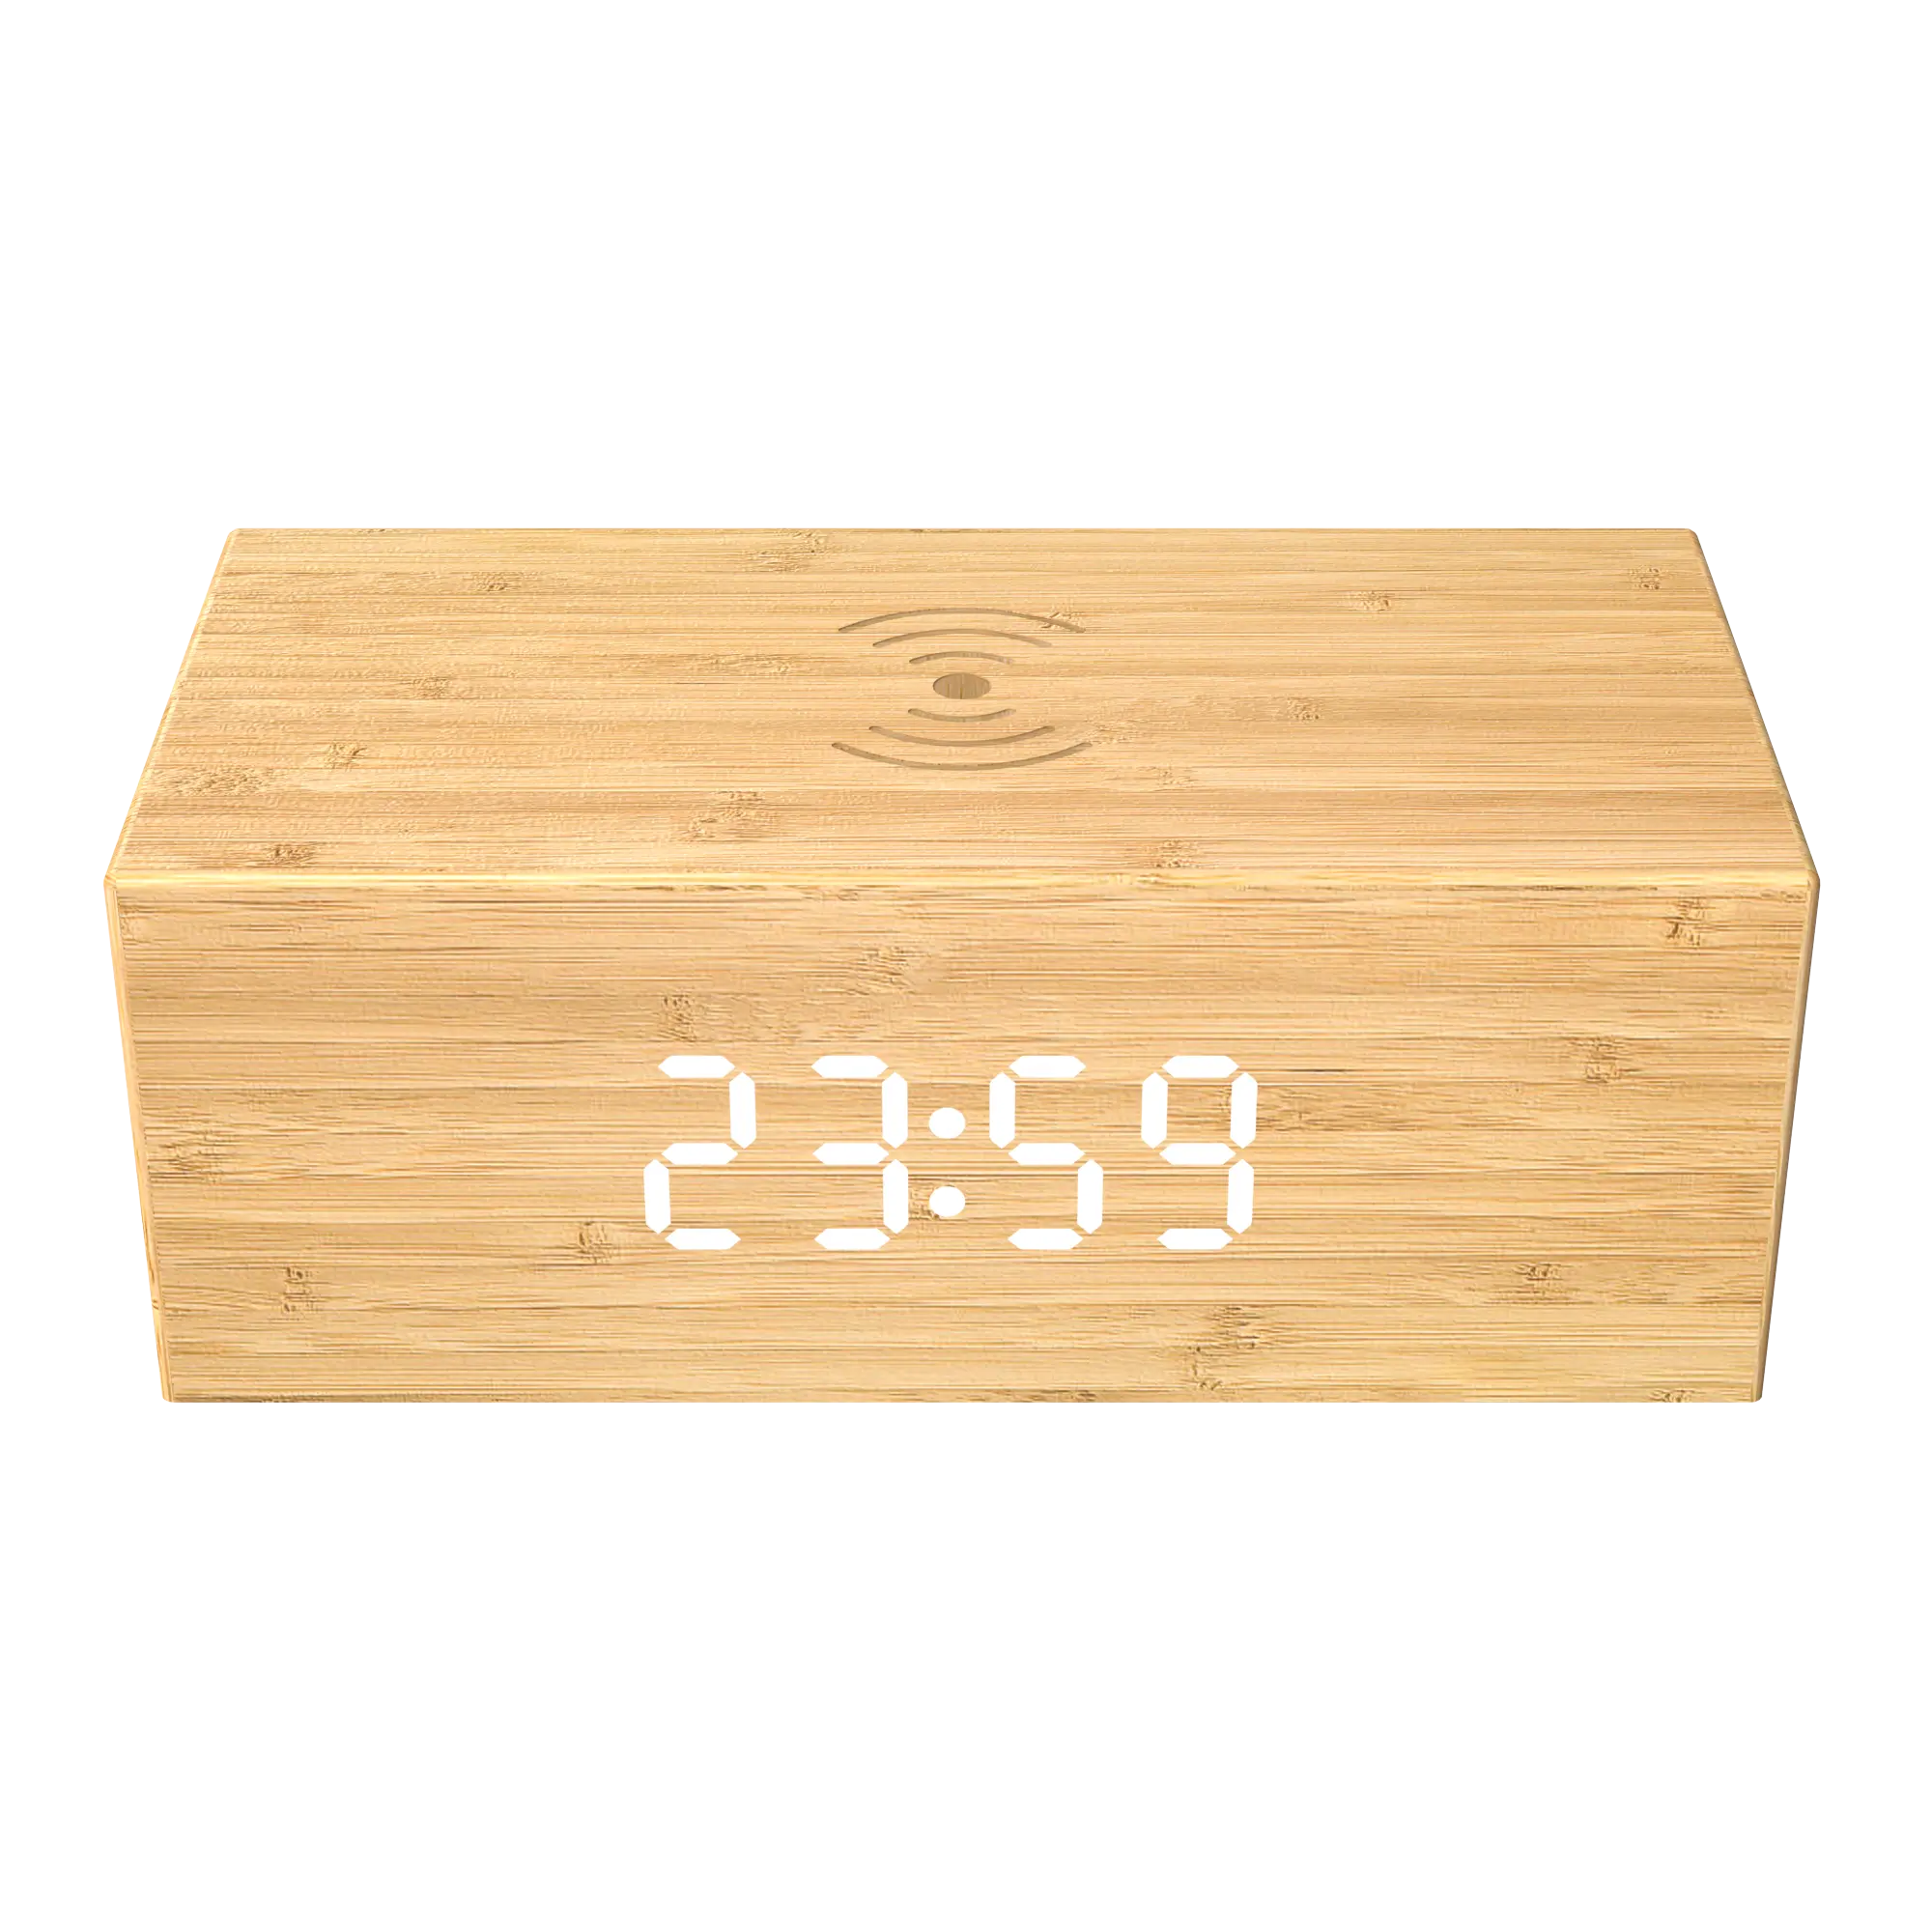 Jam Alarm kayu bambu desain 2 dalam 1, dudukan jam pengisi daya nirkabel tahan sidik jari dengan pengisian daya nirkabel